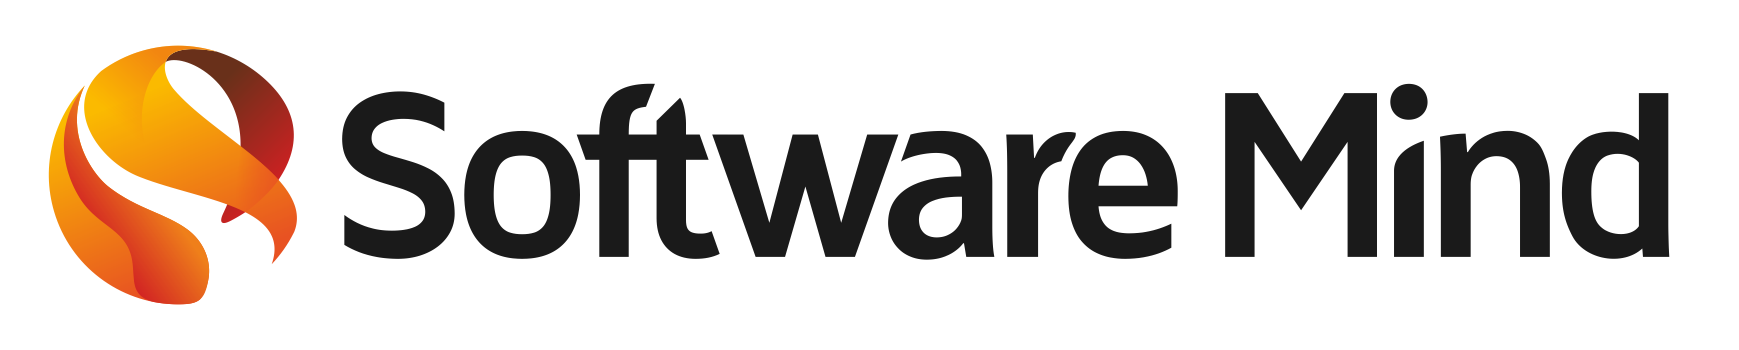 logo software mind